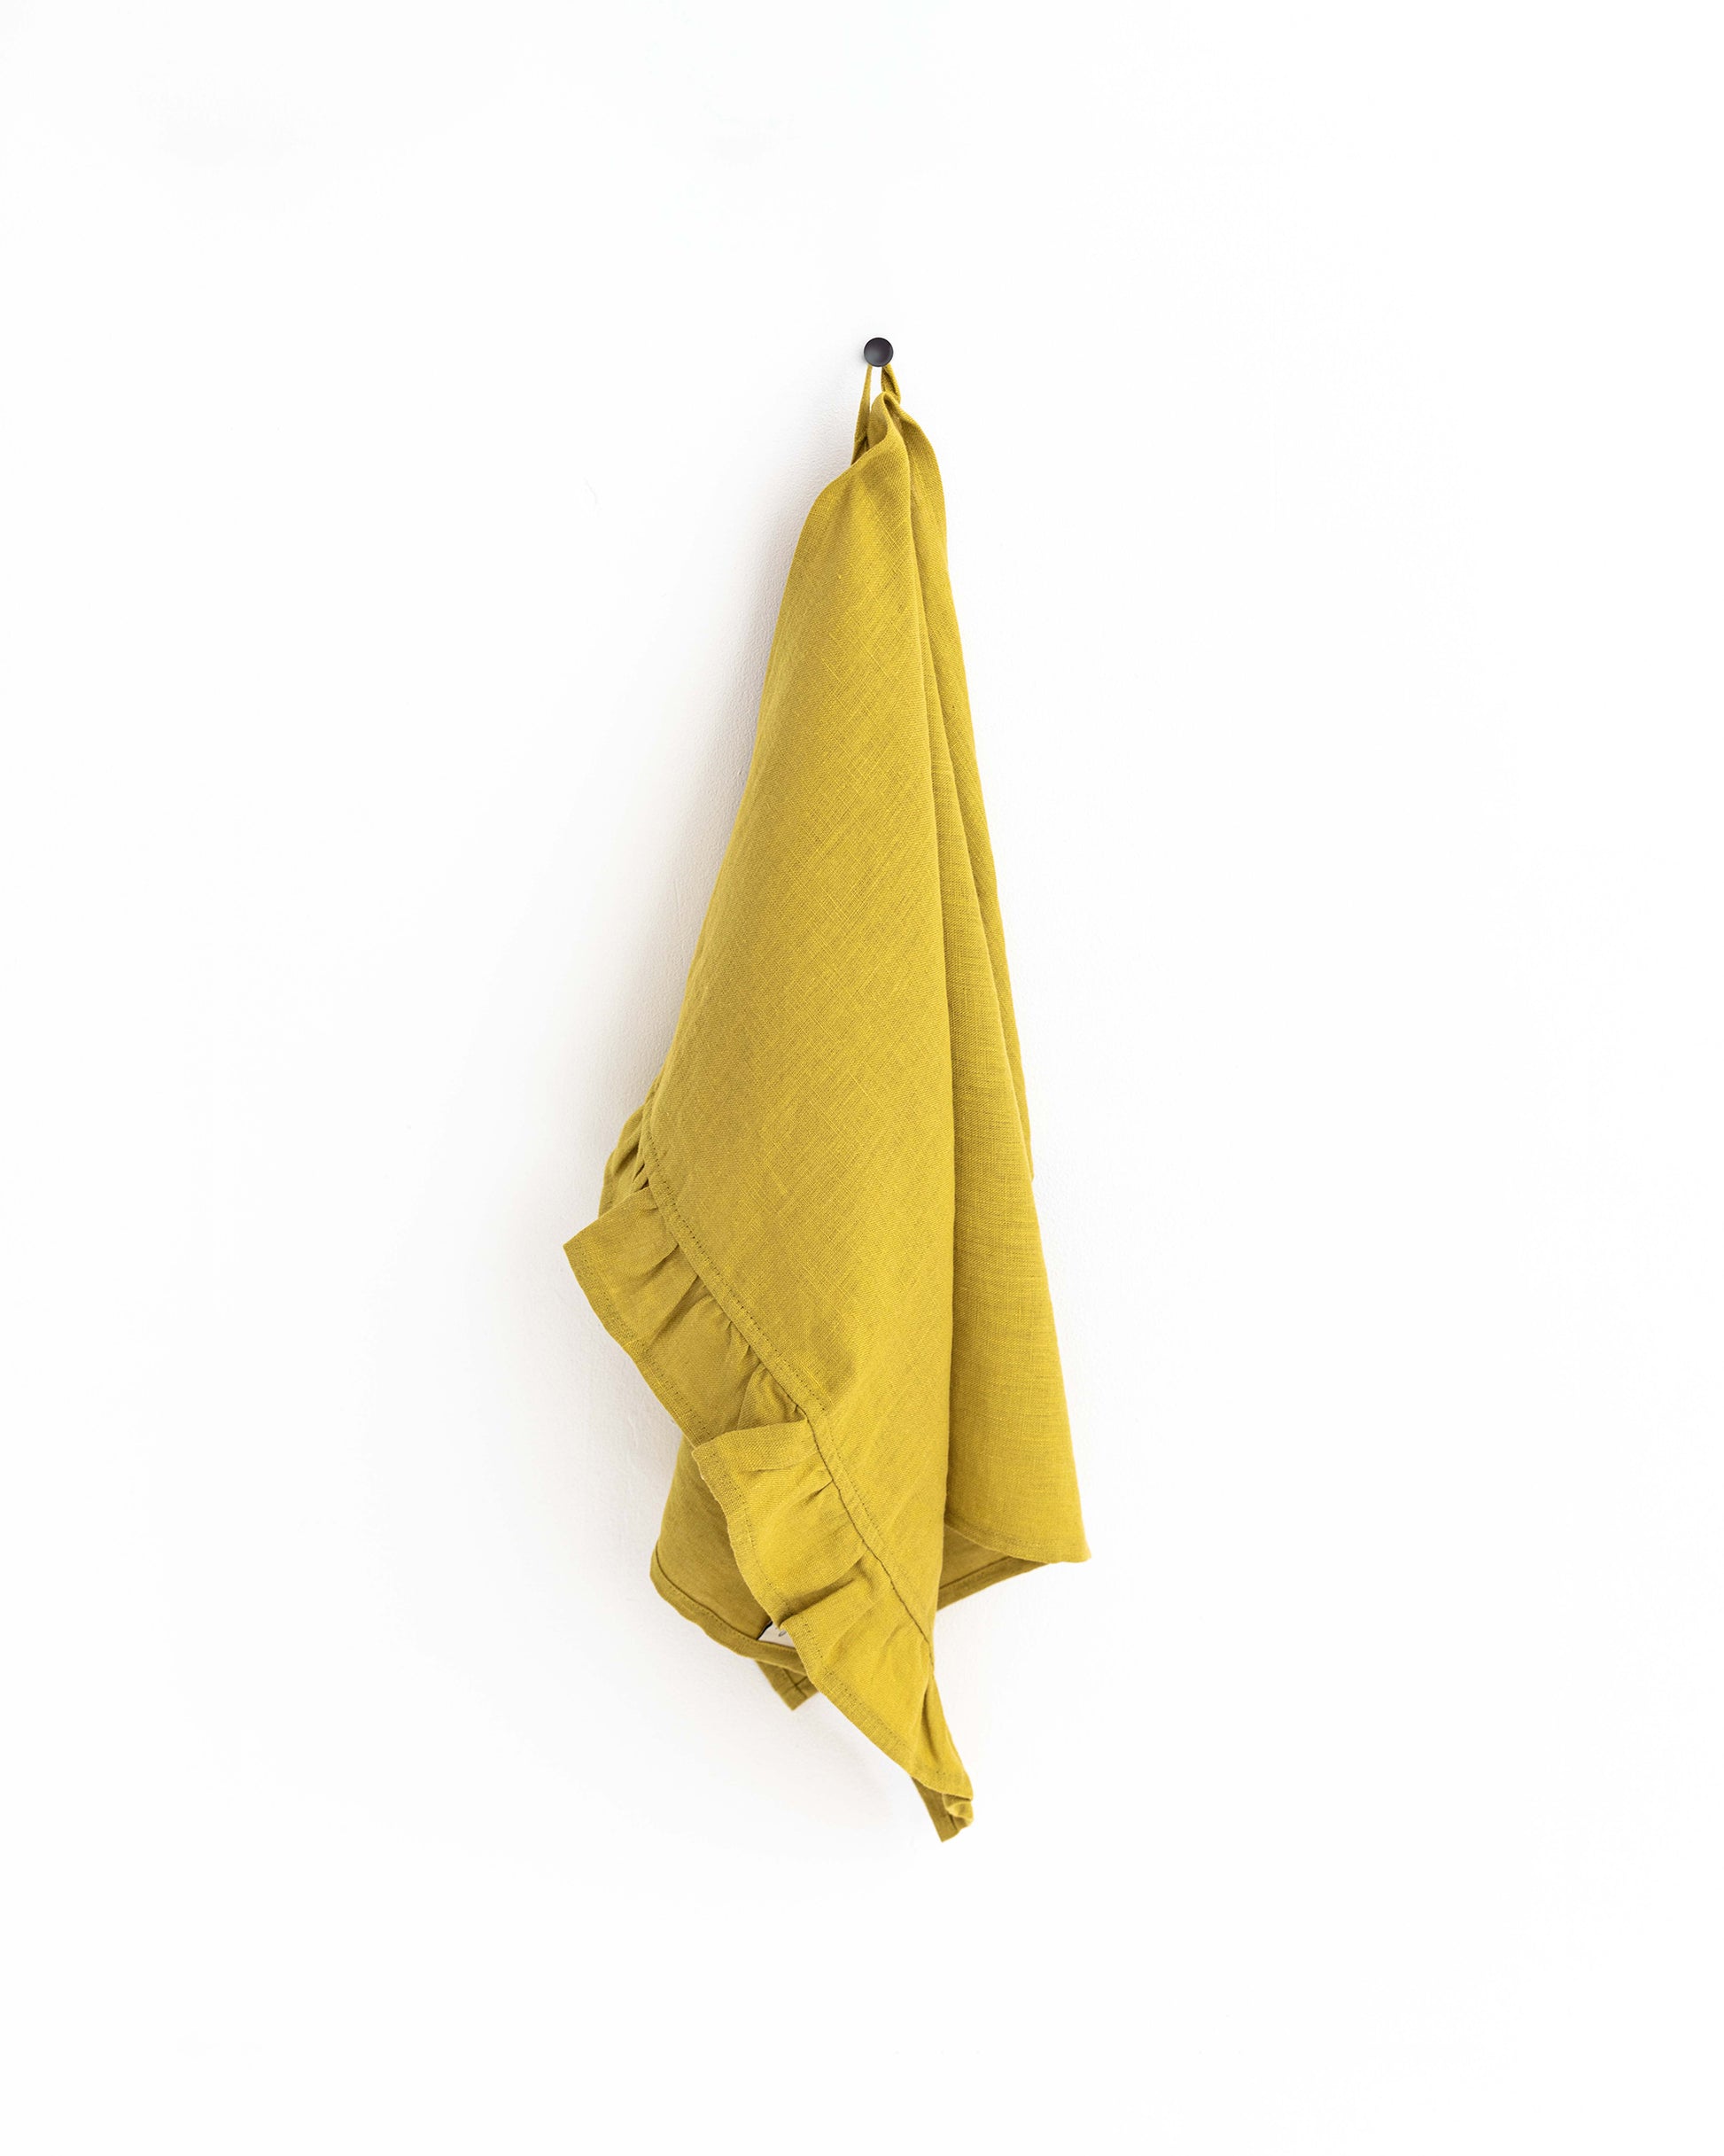 Ruffle trim linen tea towel in Moss yellow - MagicLinen